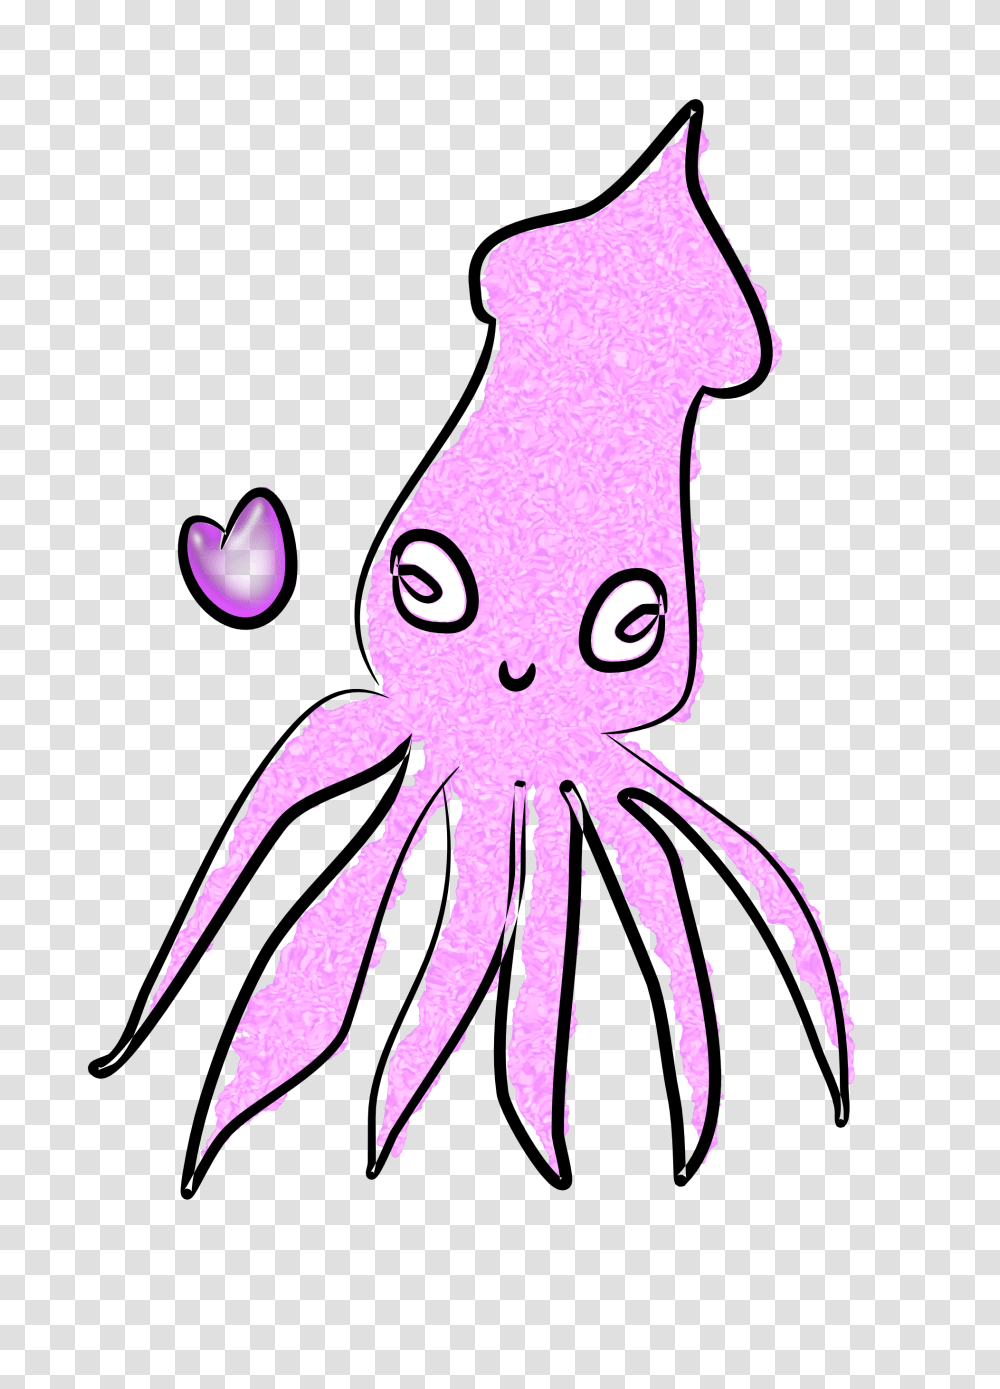 Squid Clip Art, Sea Life, Animal, Invertebrate, Octopus Transparent Png